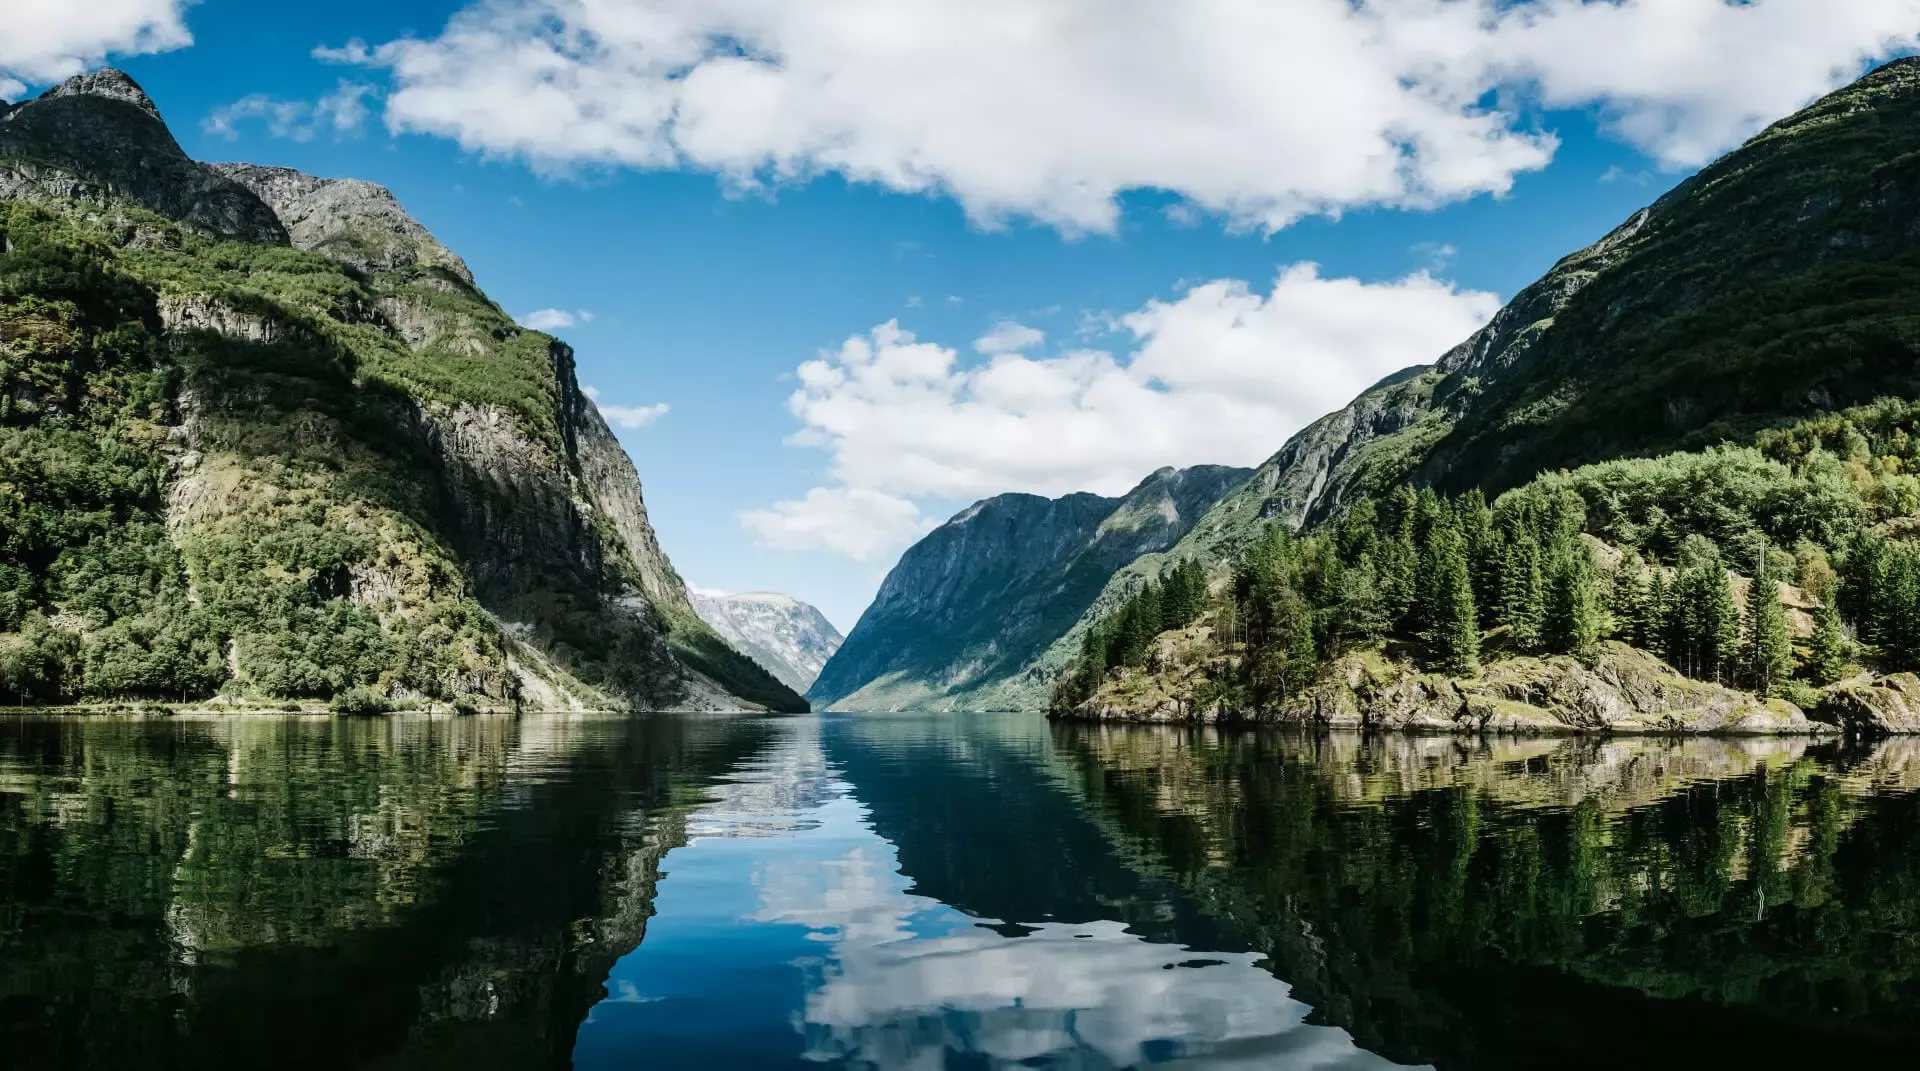 Vakantie in Noorwegen: waarop letten?